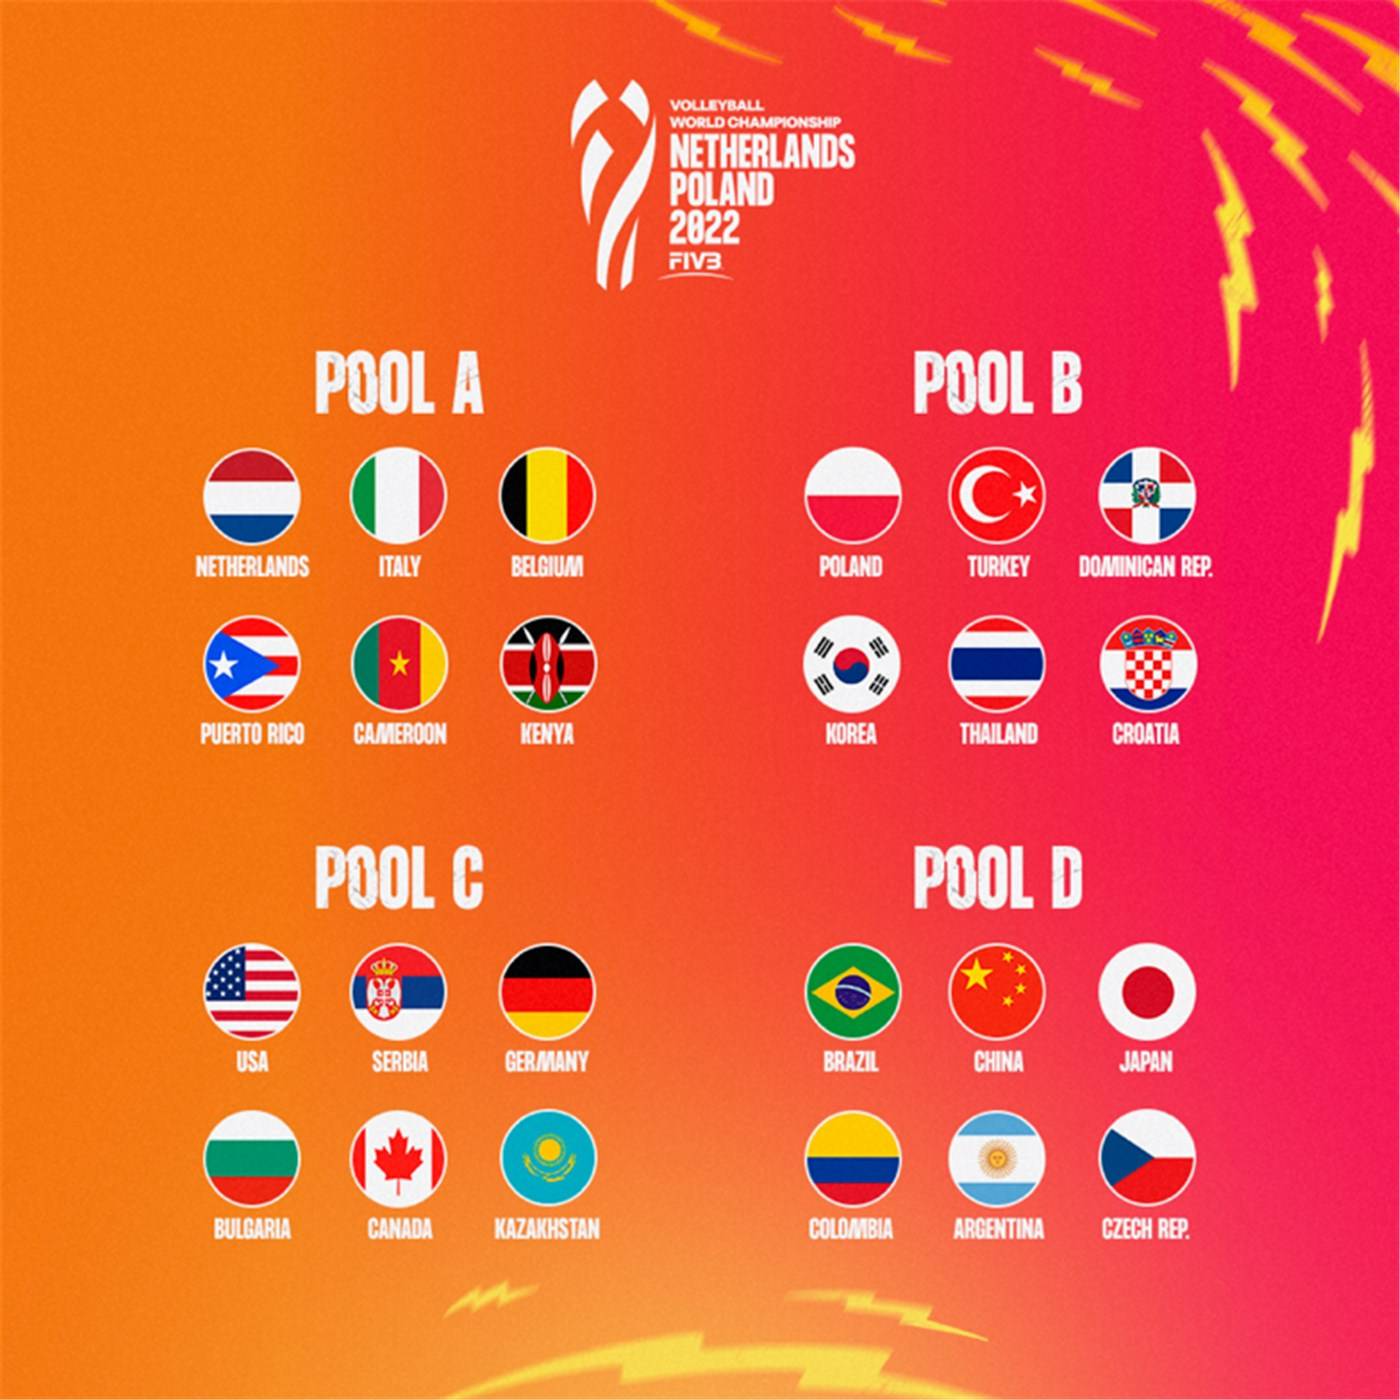 分组|女排世锦赛分组：中国与巴西、日本、哥伦比亚、阿根廷、捷克同组